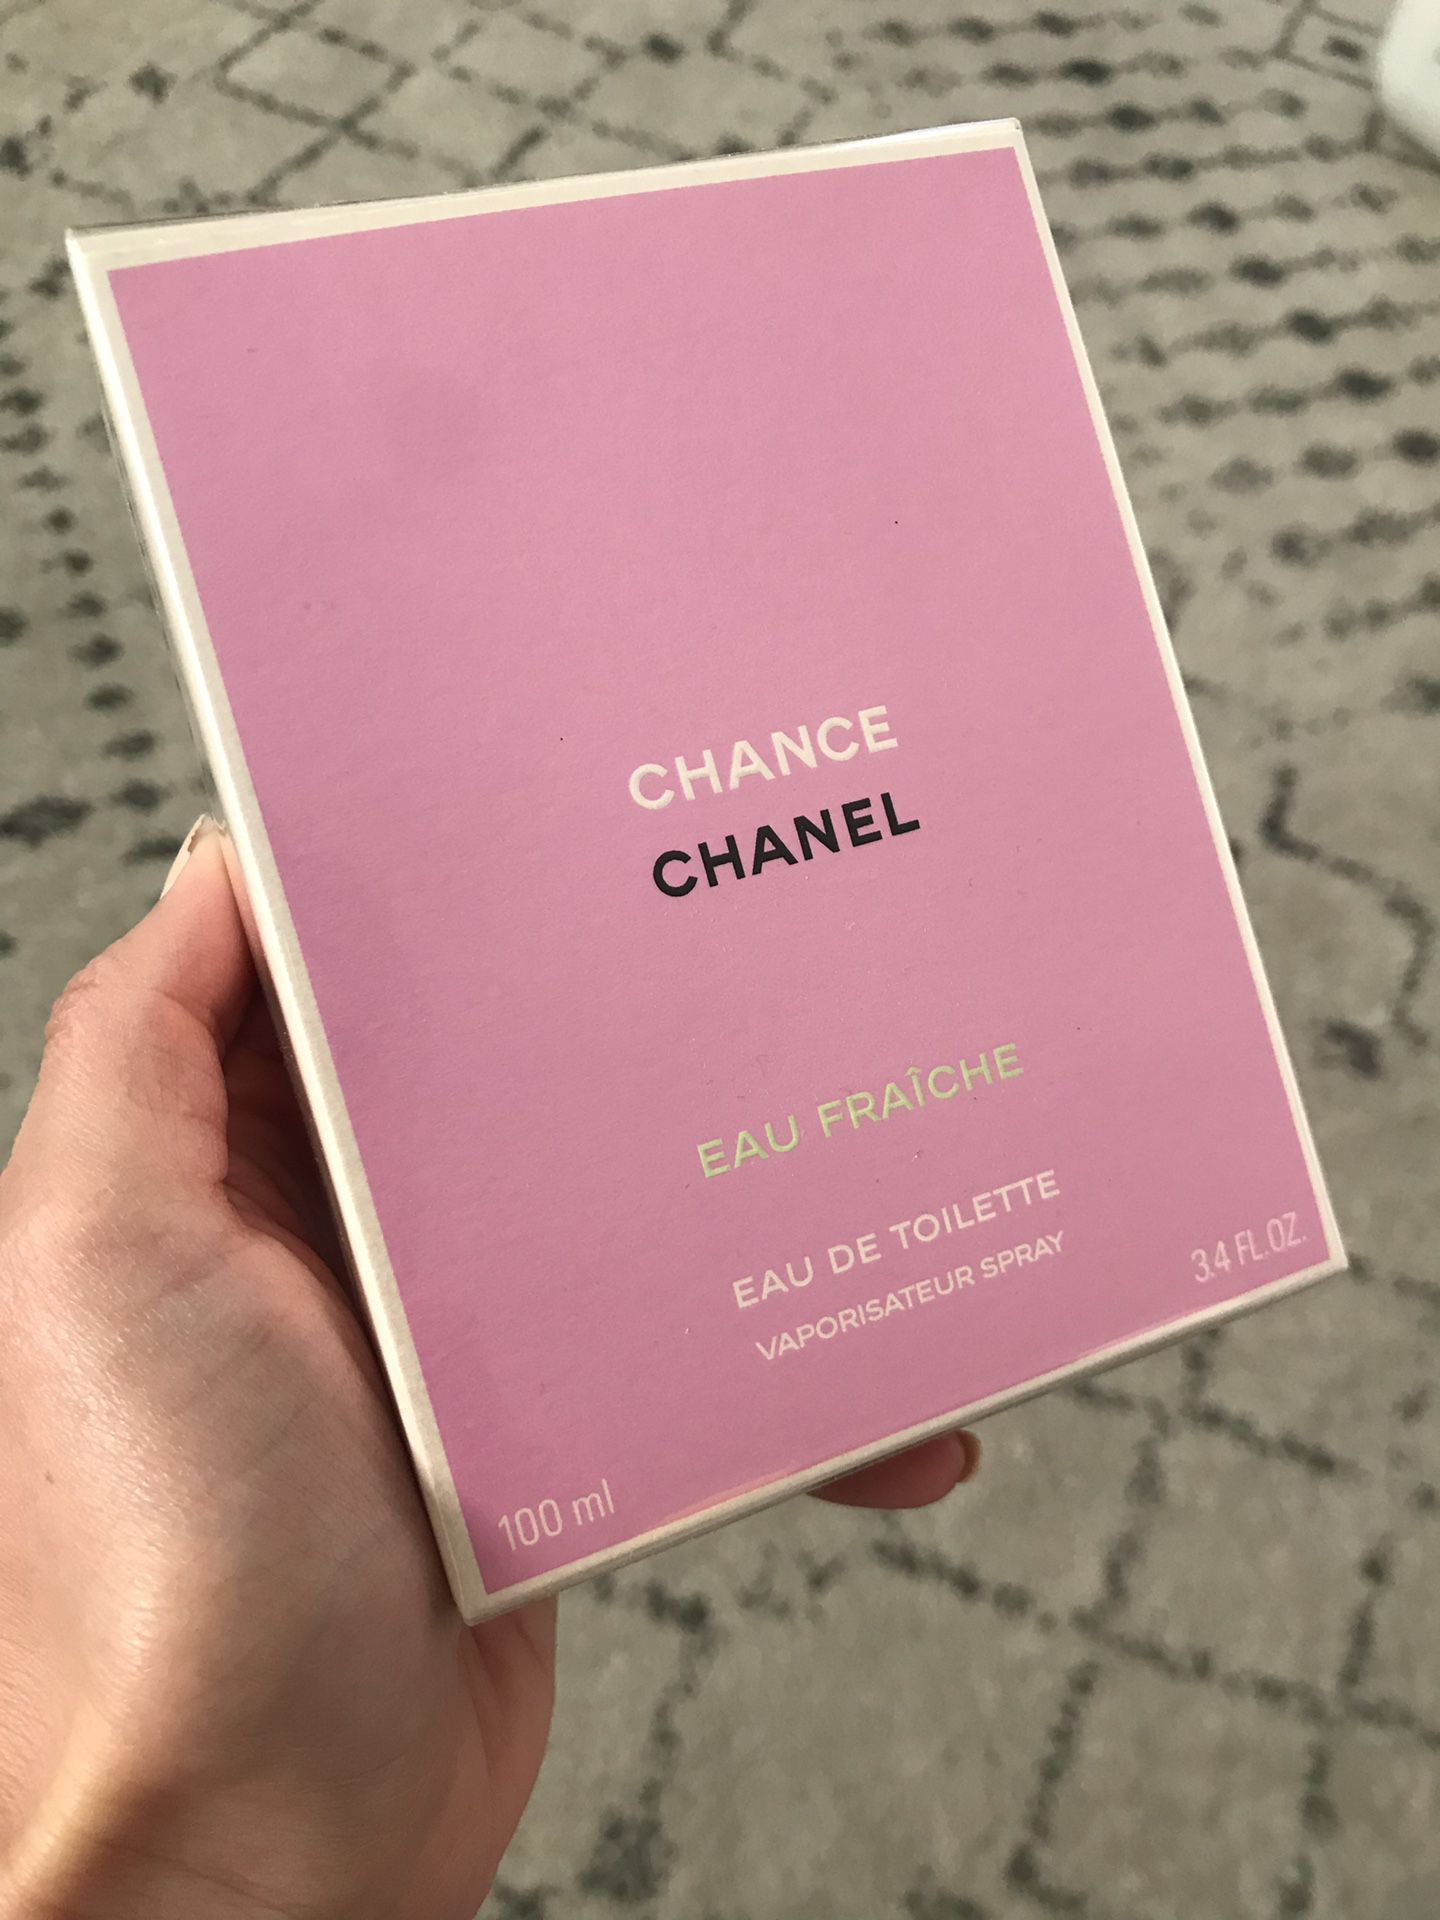 Chanel Chance Eau Fraiche Perfum Perfume Spray